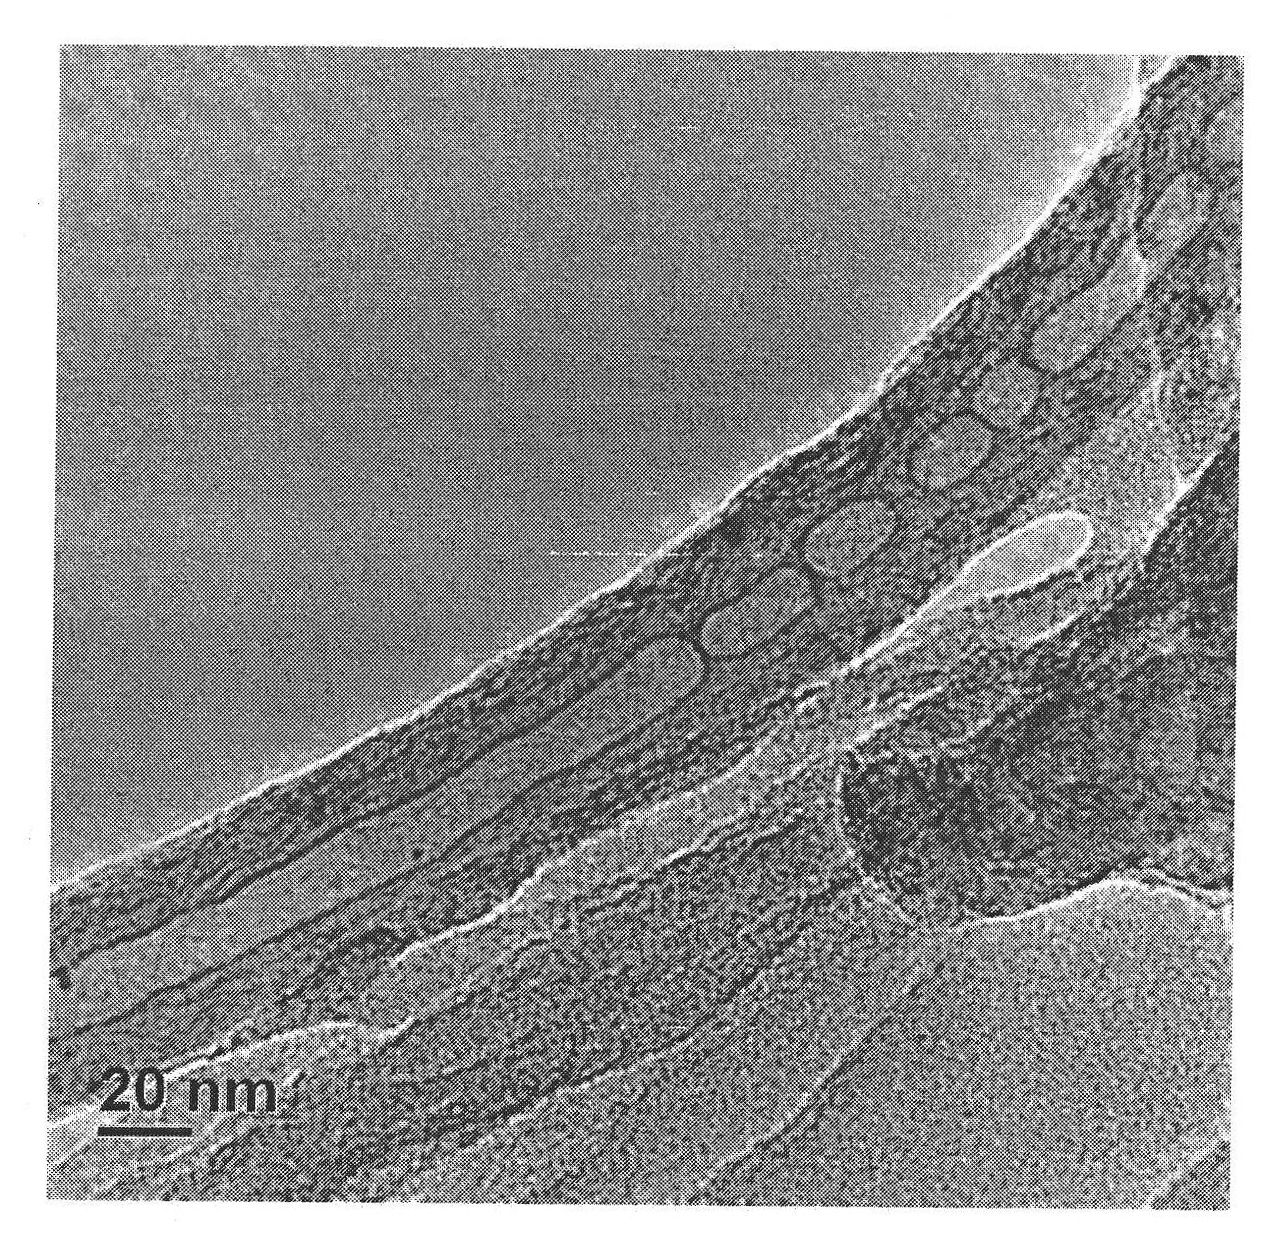 Method for preparing graphene nanobelt